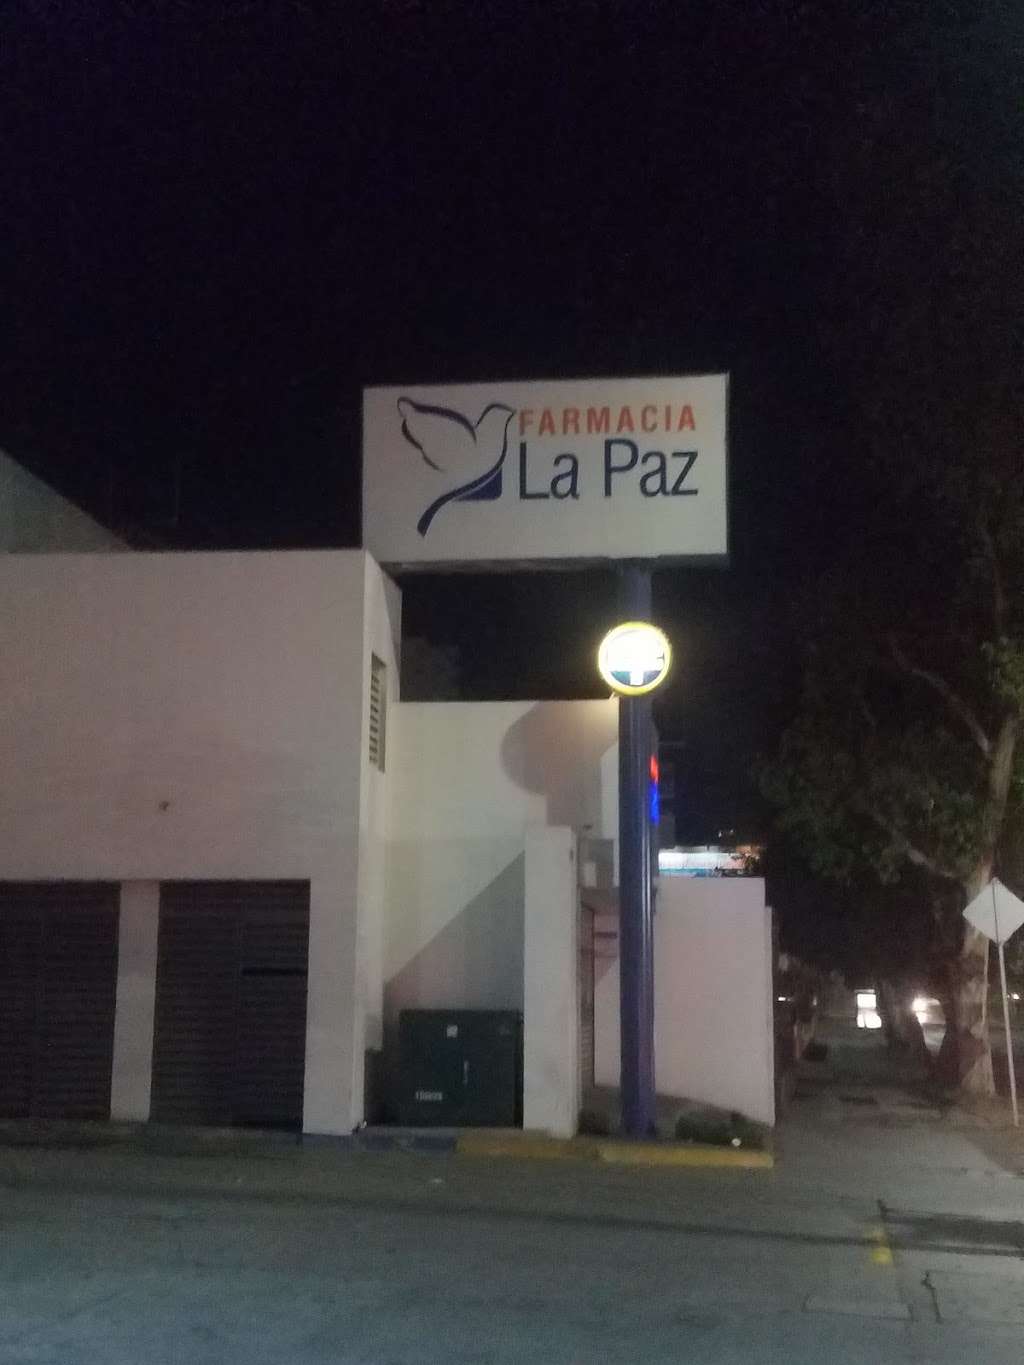 Farmacia La Paz | Av. Paseo, Av Rio Tijuana 10830, Zona Urbana Rio Tijuana, 22010 Tijuana, B.C., Mexico | Phone: 800 714 0367